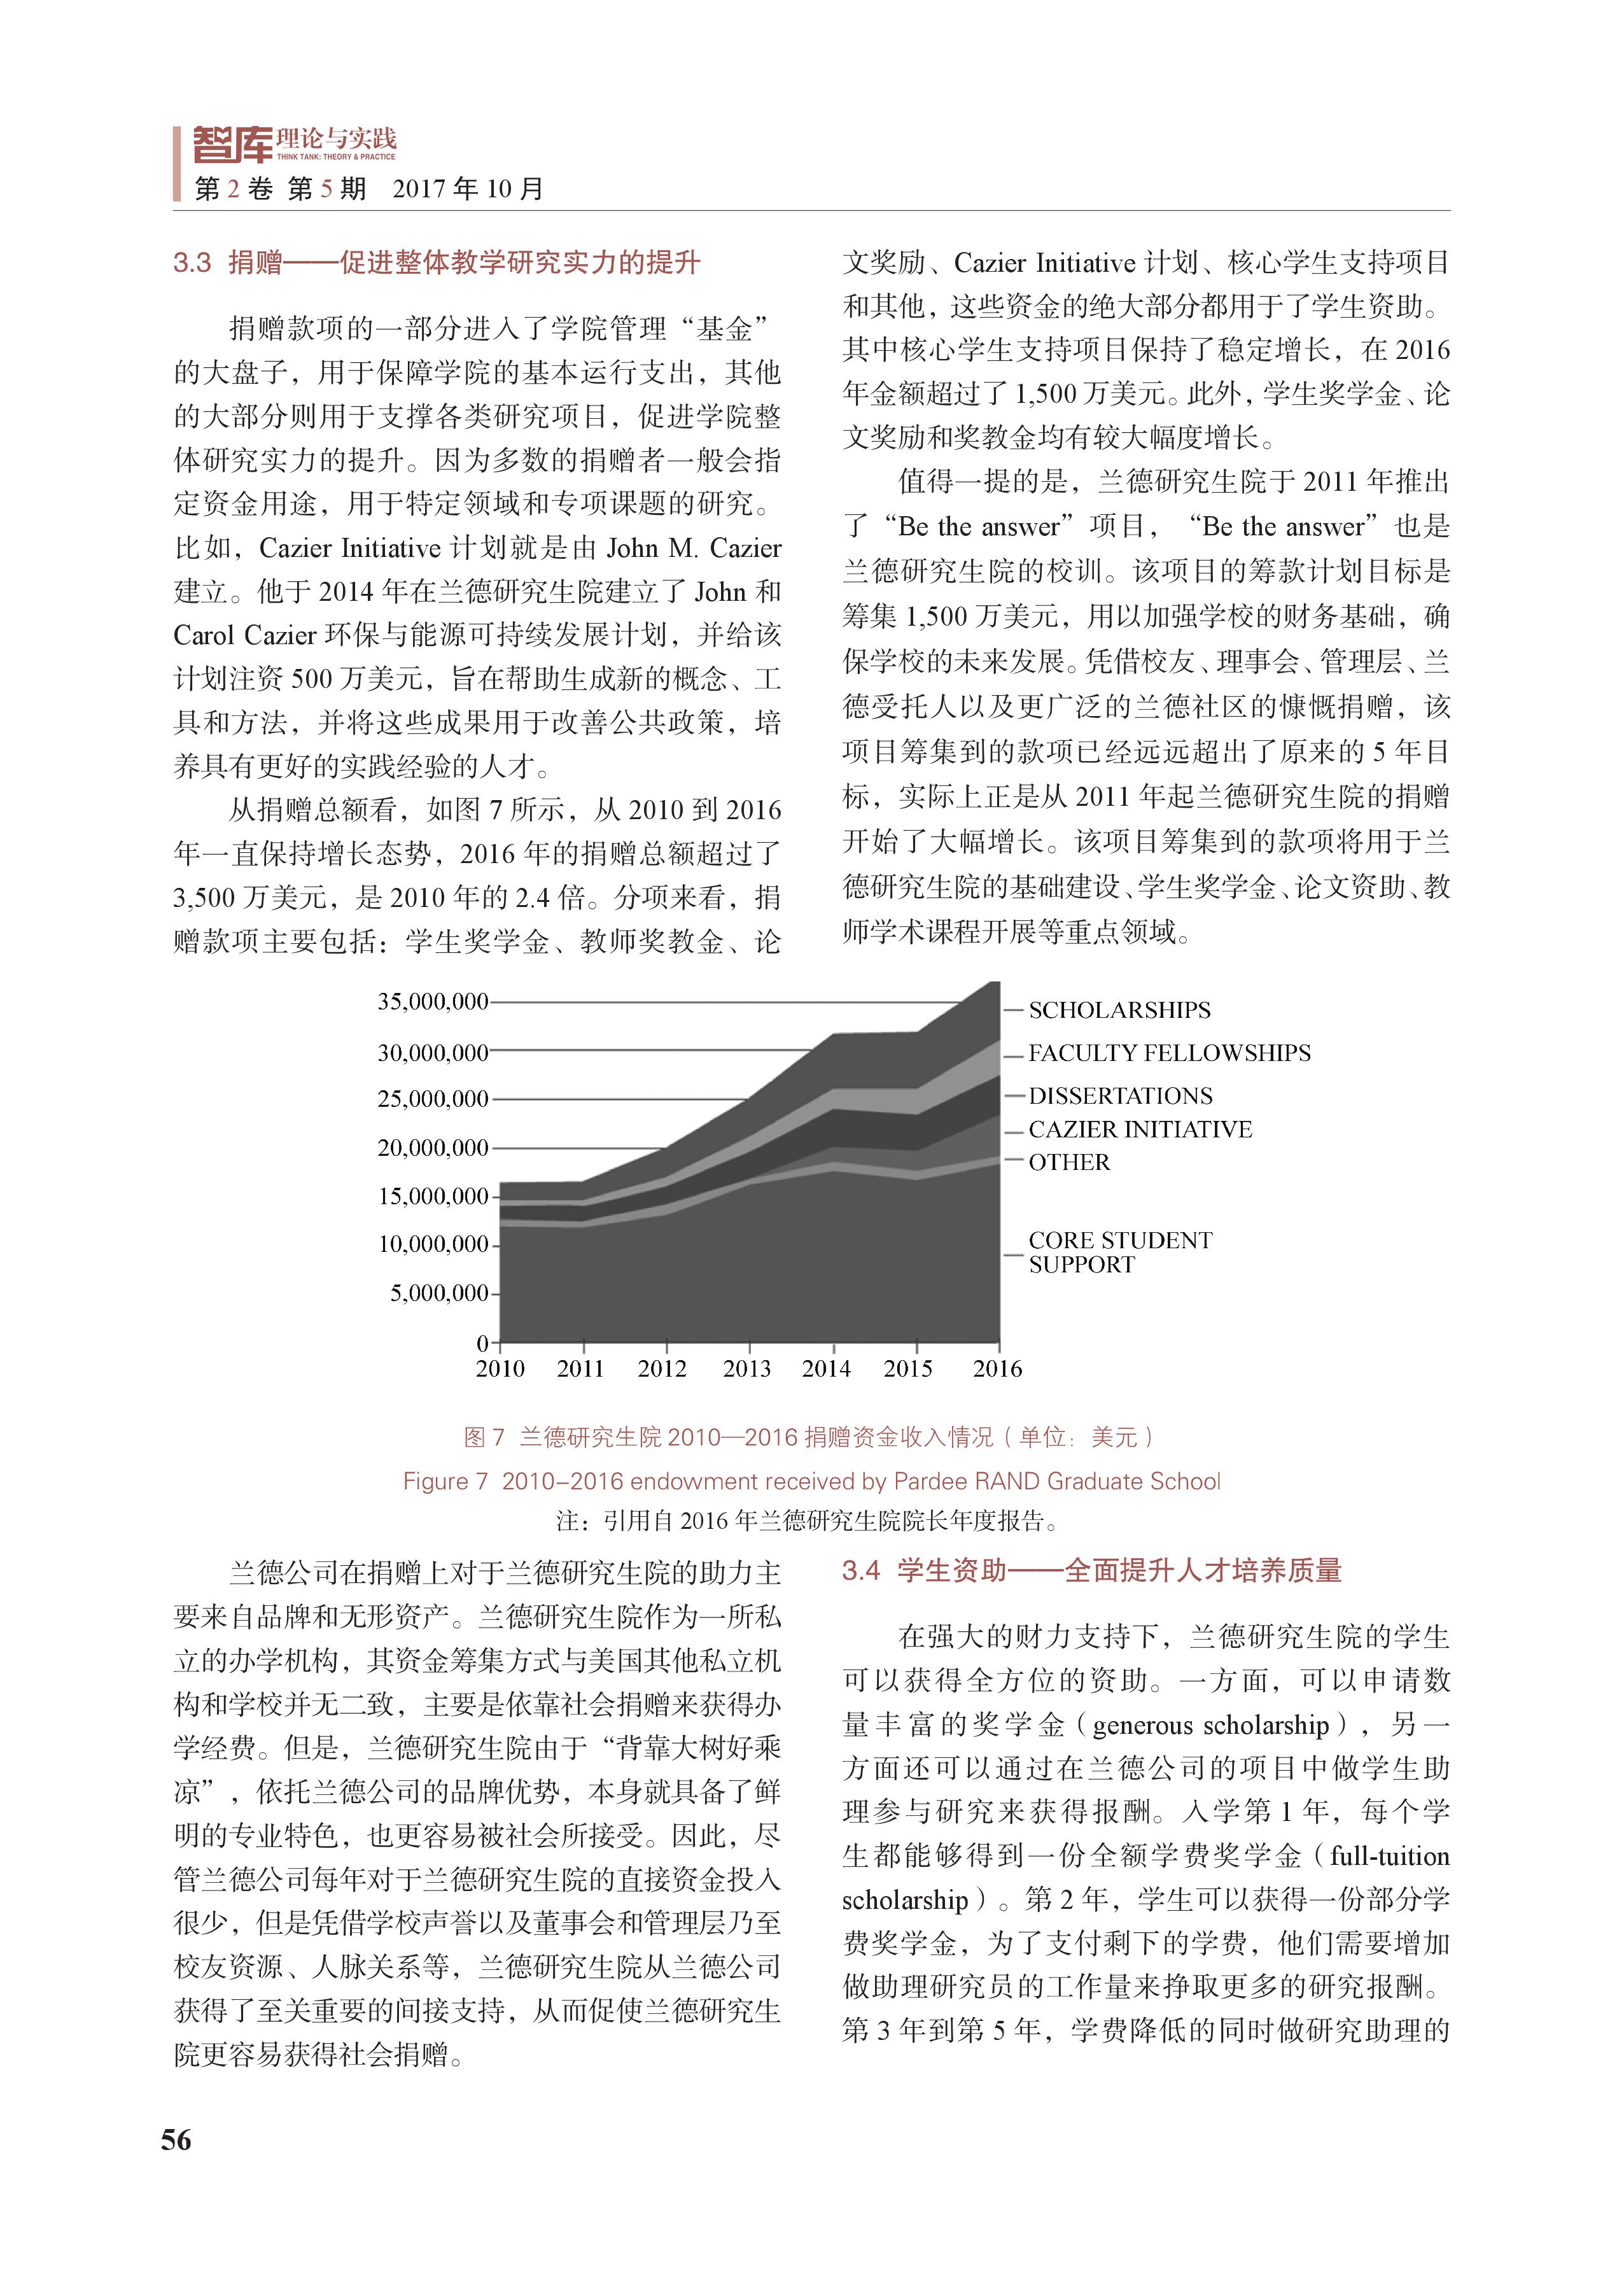 兰德研究生院的运行机制及其对中国智库建设的启示(图7)